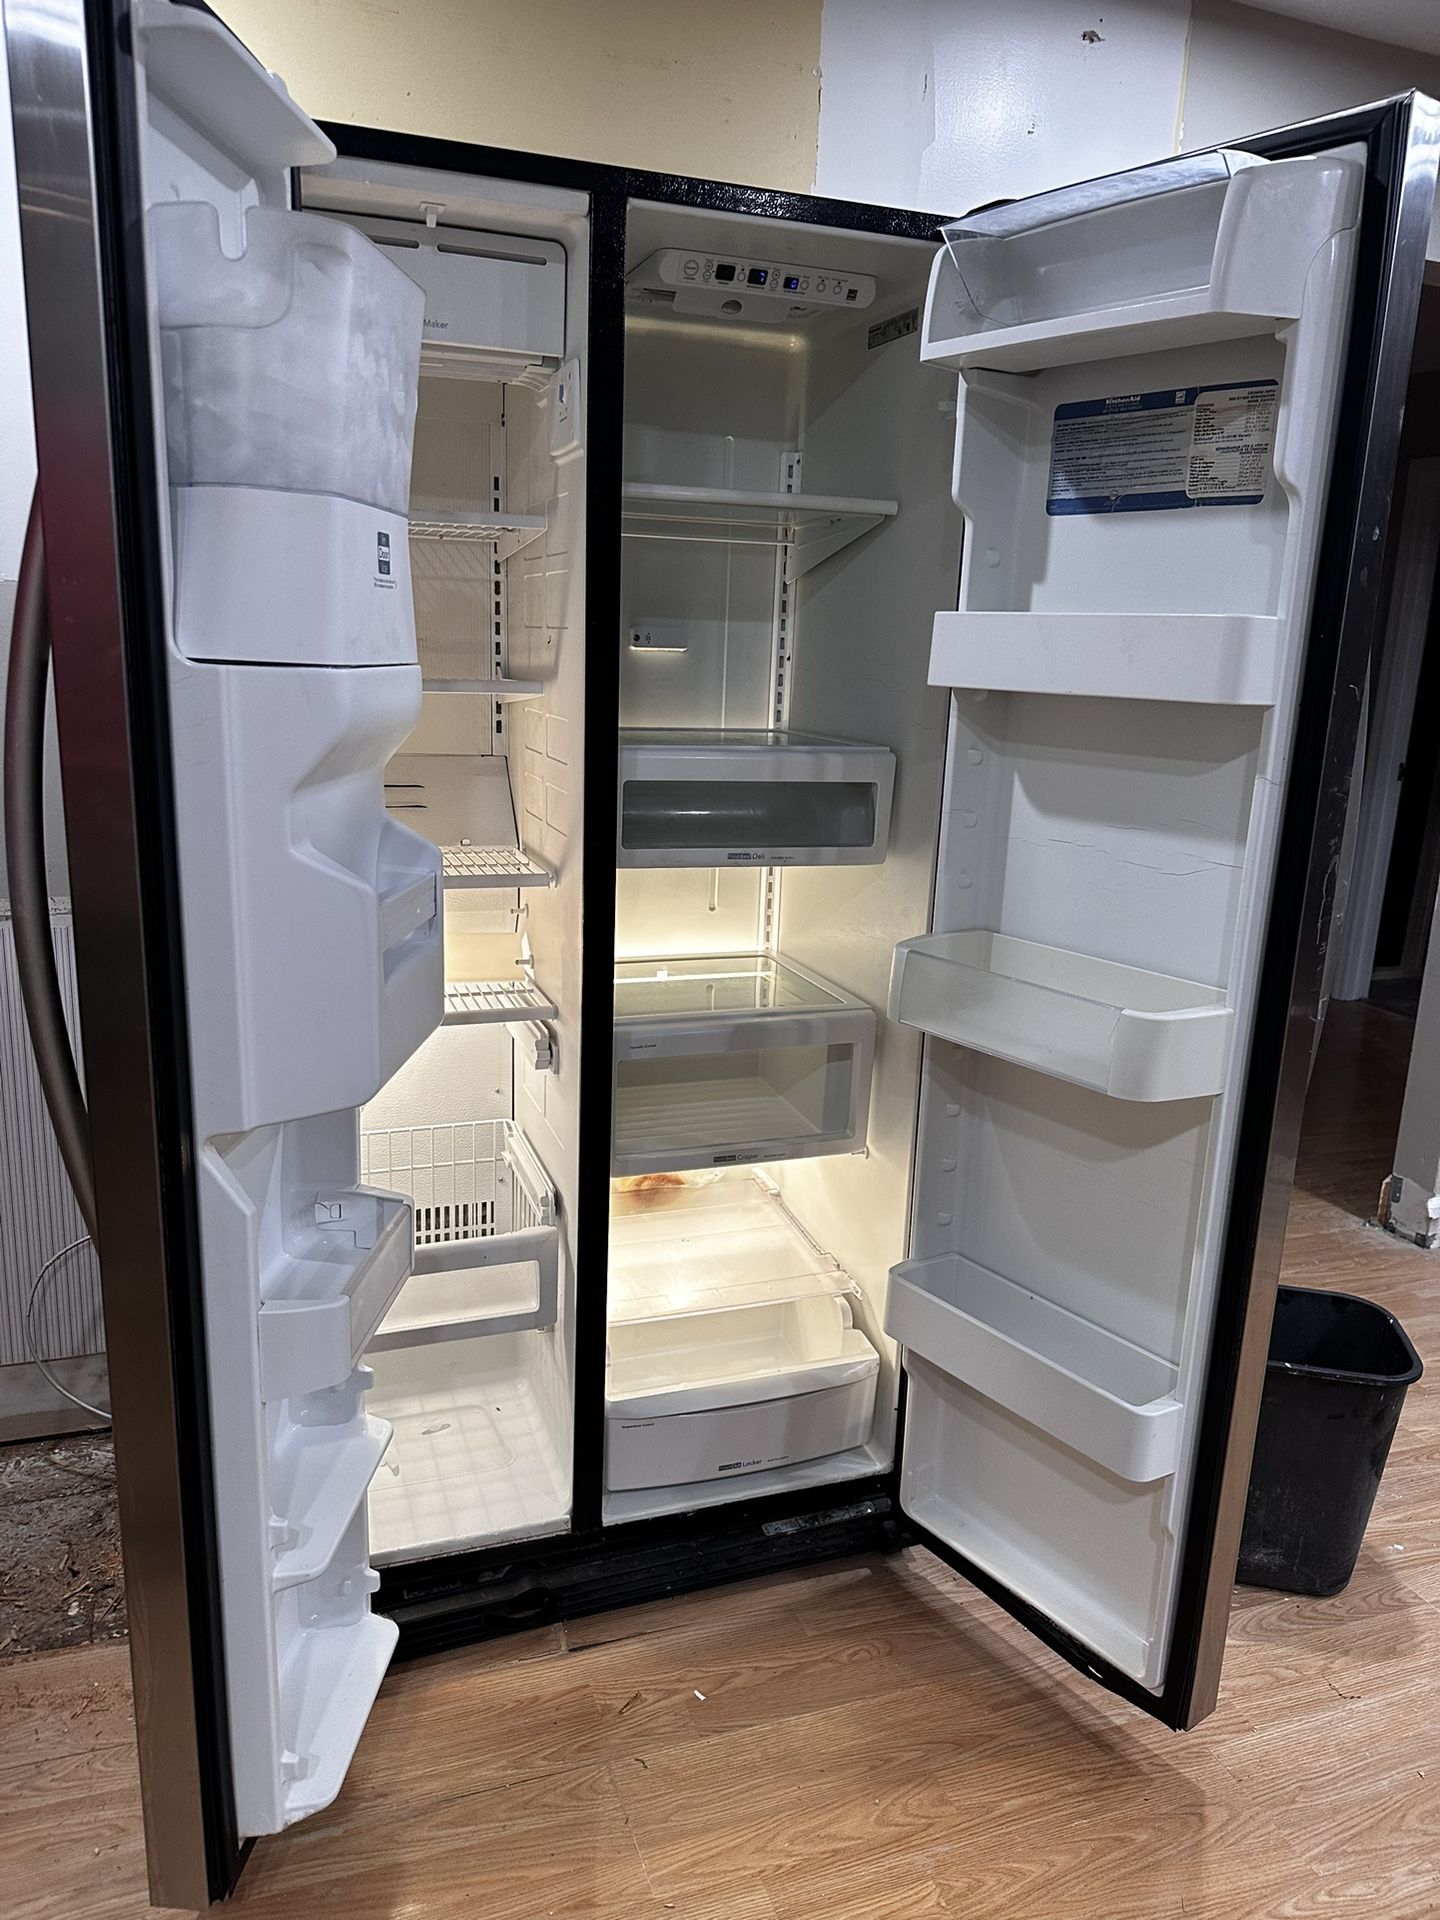 Refrigerator $250